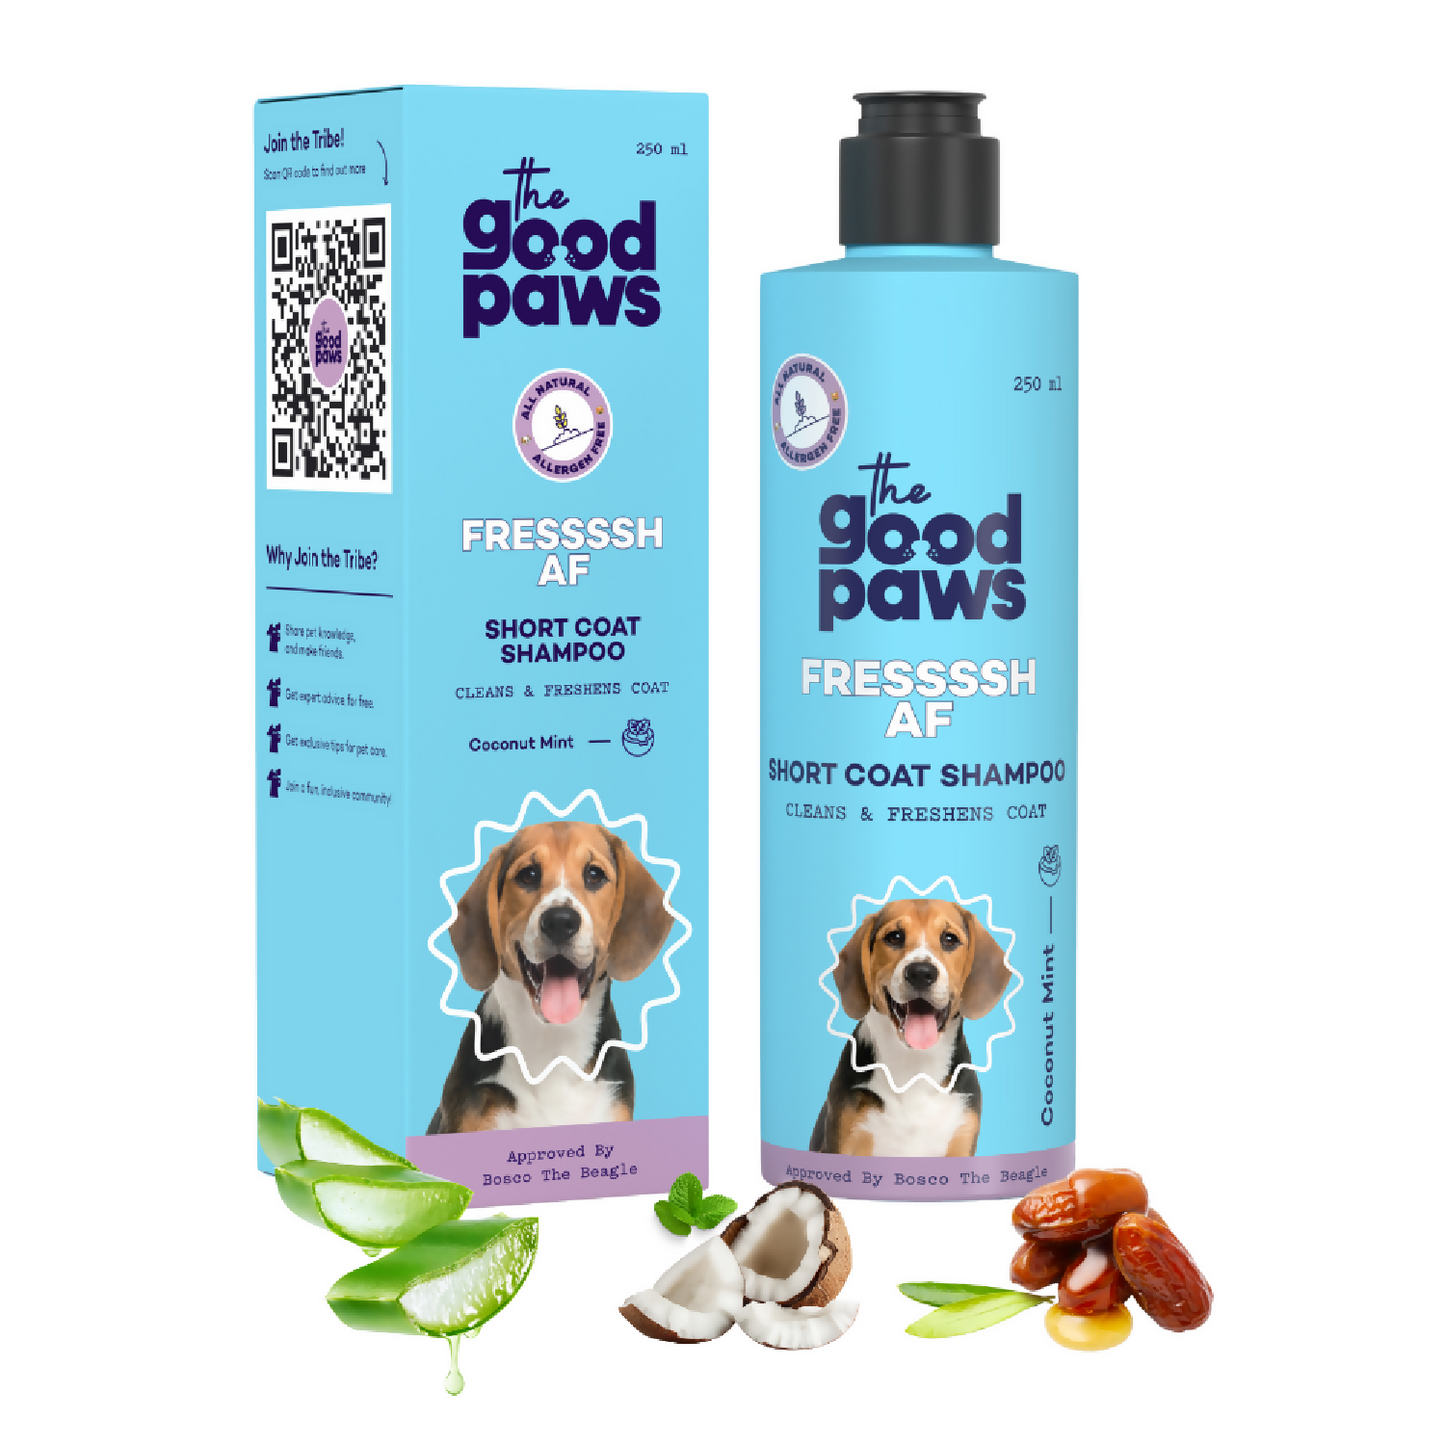 The Good Paws FRESSSSH AF Short Coat Shampoo | Smoothes Skin & Coat | Made Safe